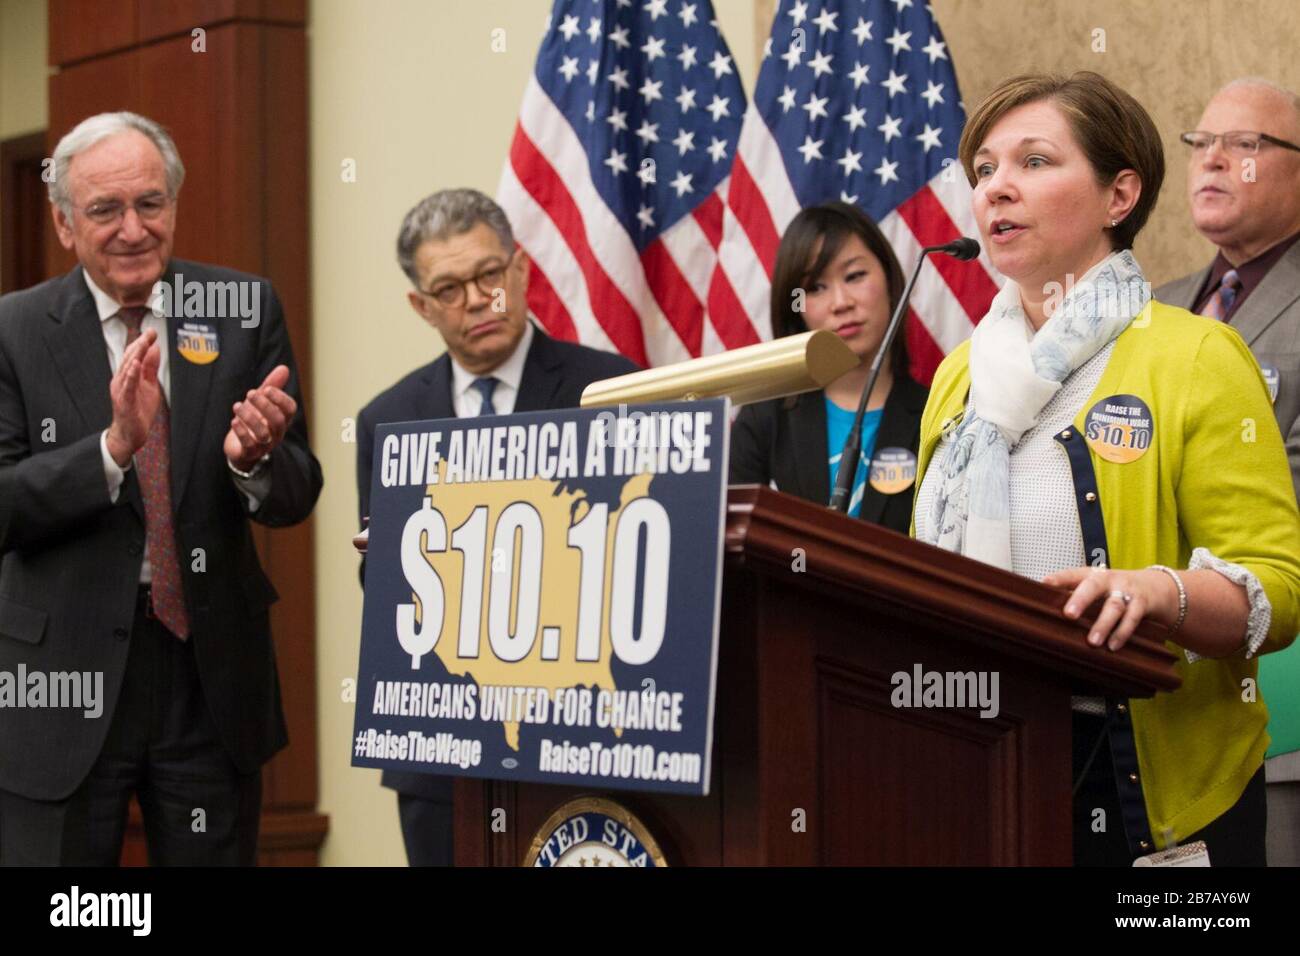 Gina Schaefer - Give America a Raise $10.10, 2014. Stock Photo